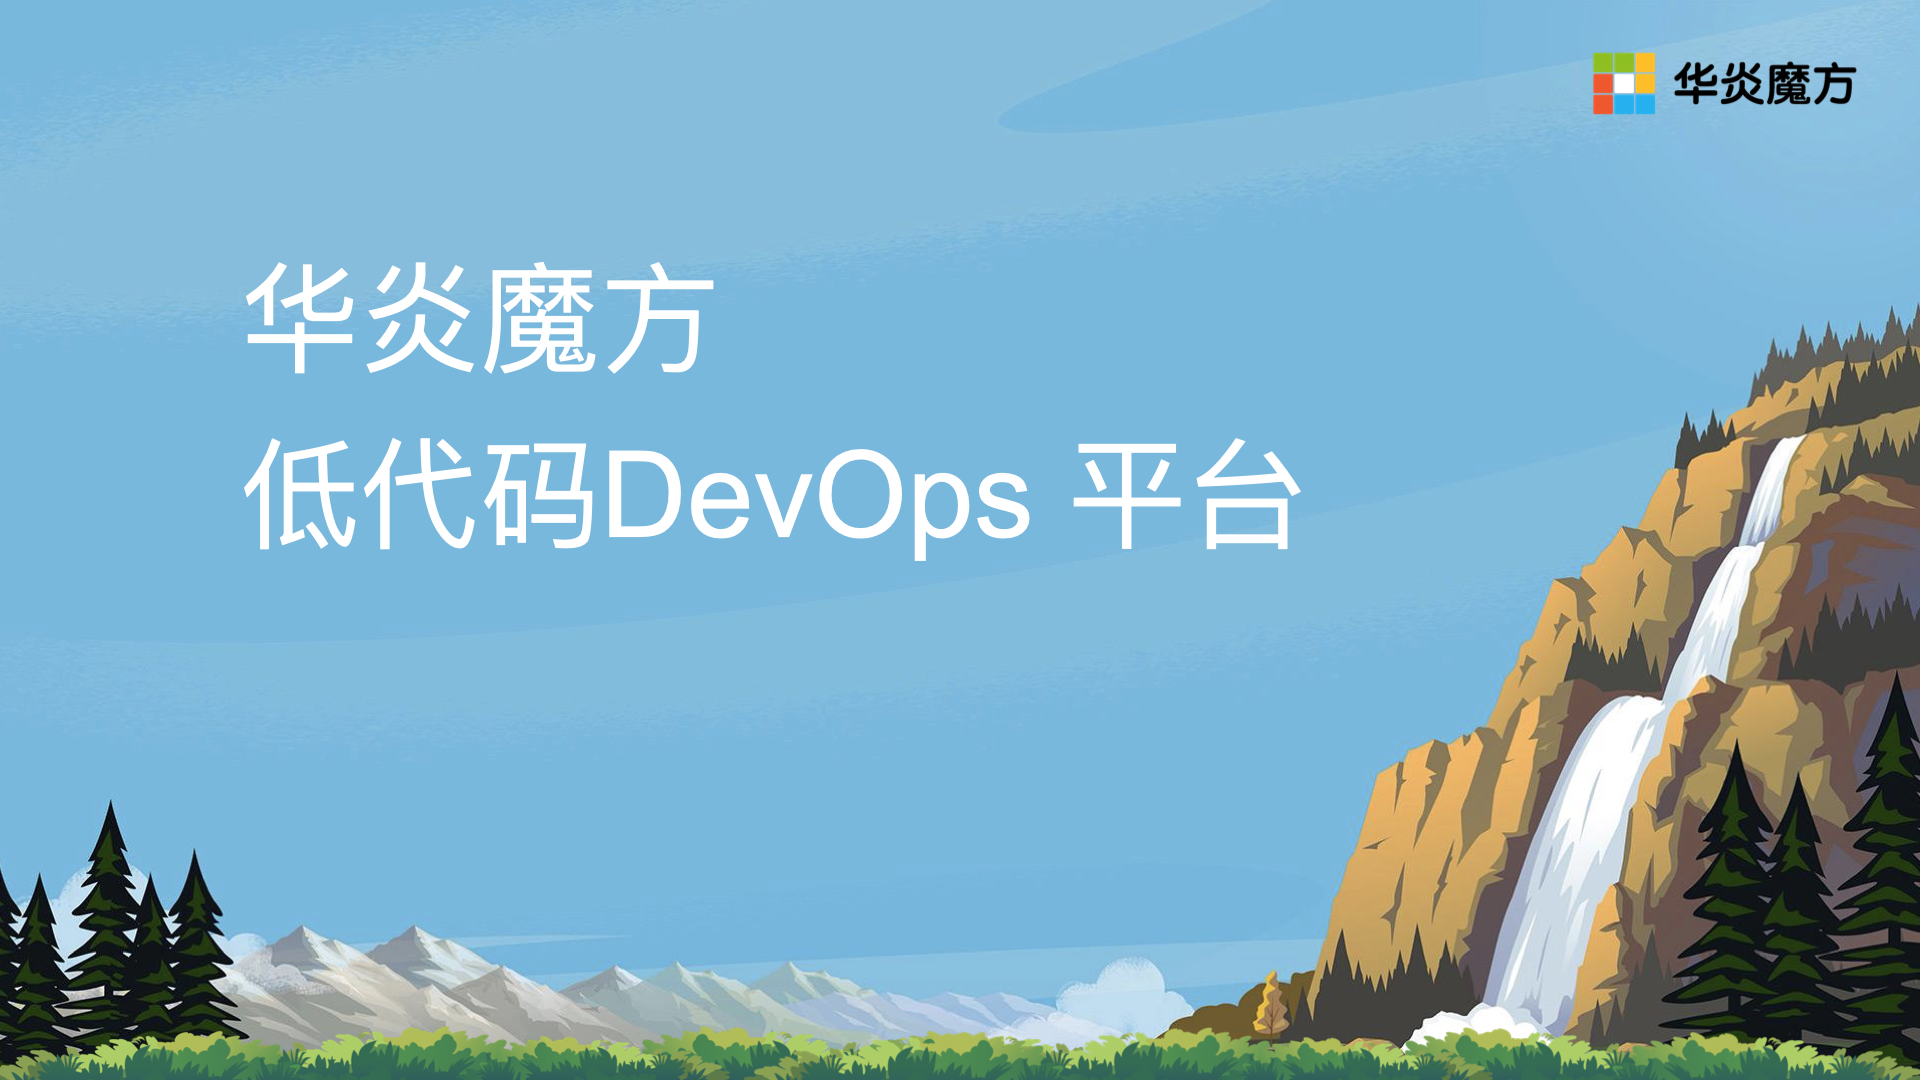 华炎魔方低代码 DevOps 平台